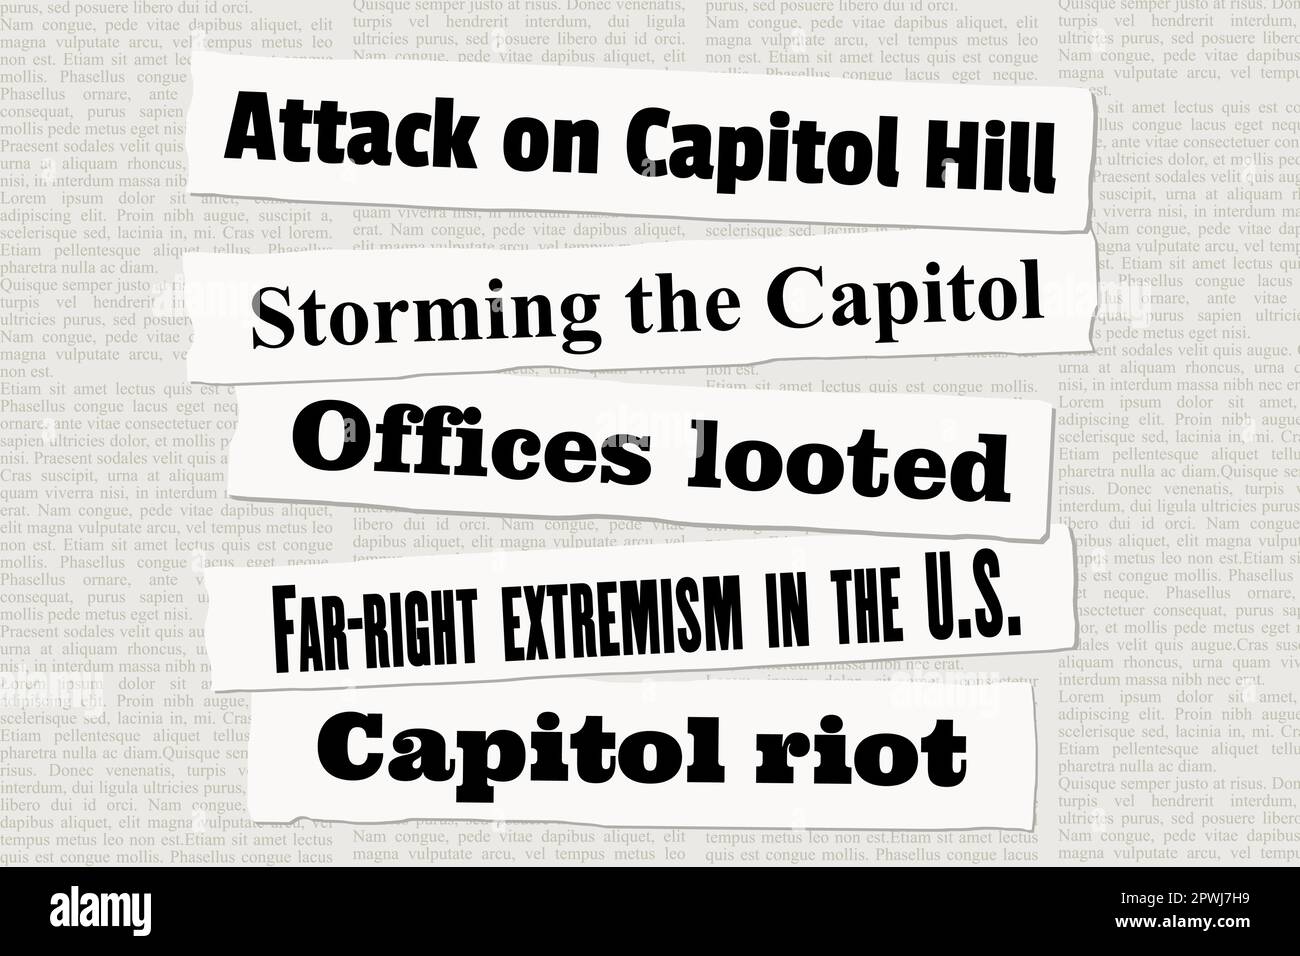 NOTIZIE di attacco del Campidoglio DEGLI STATI UNITI. Ritagli di giornale su Capitol Hill e la sommossa del Campidoglio. Illustrazione Vettoriale